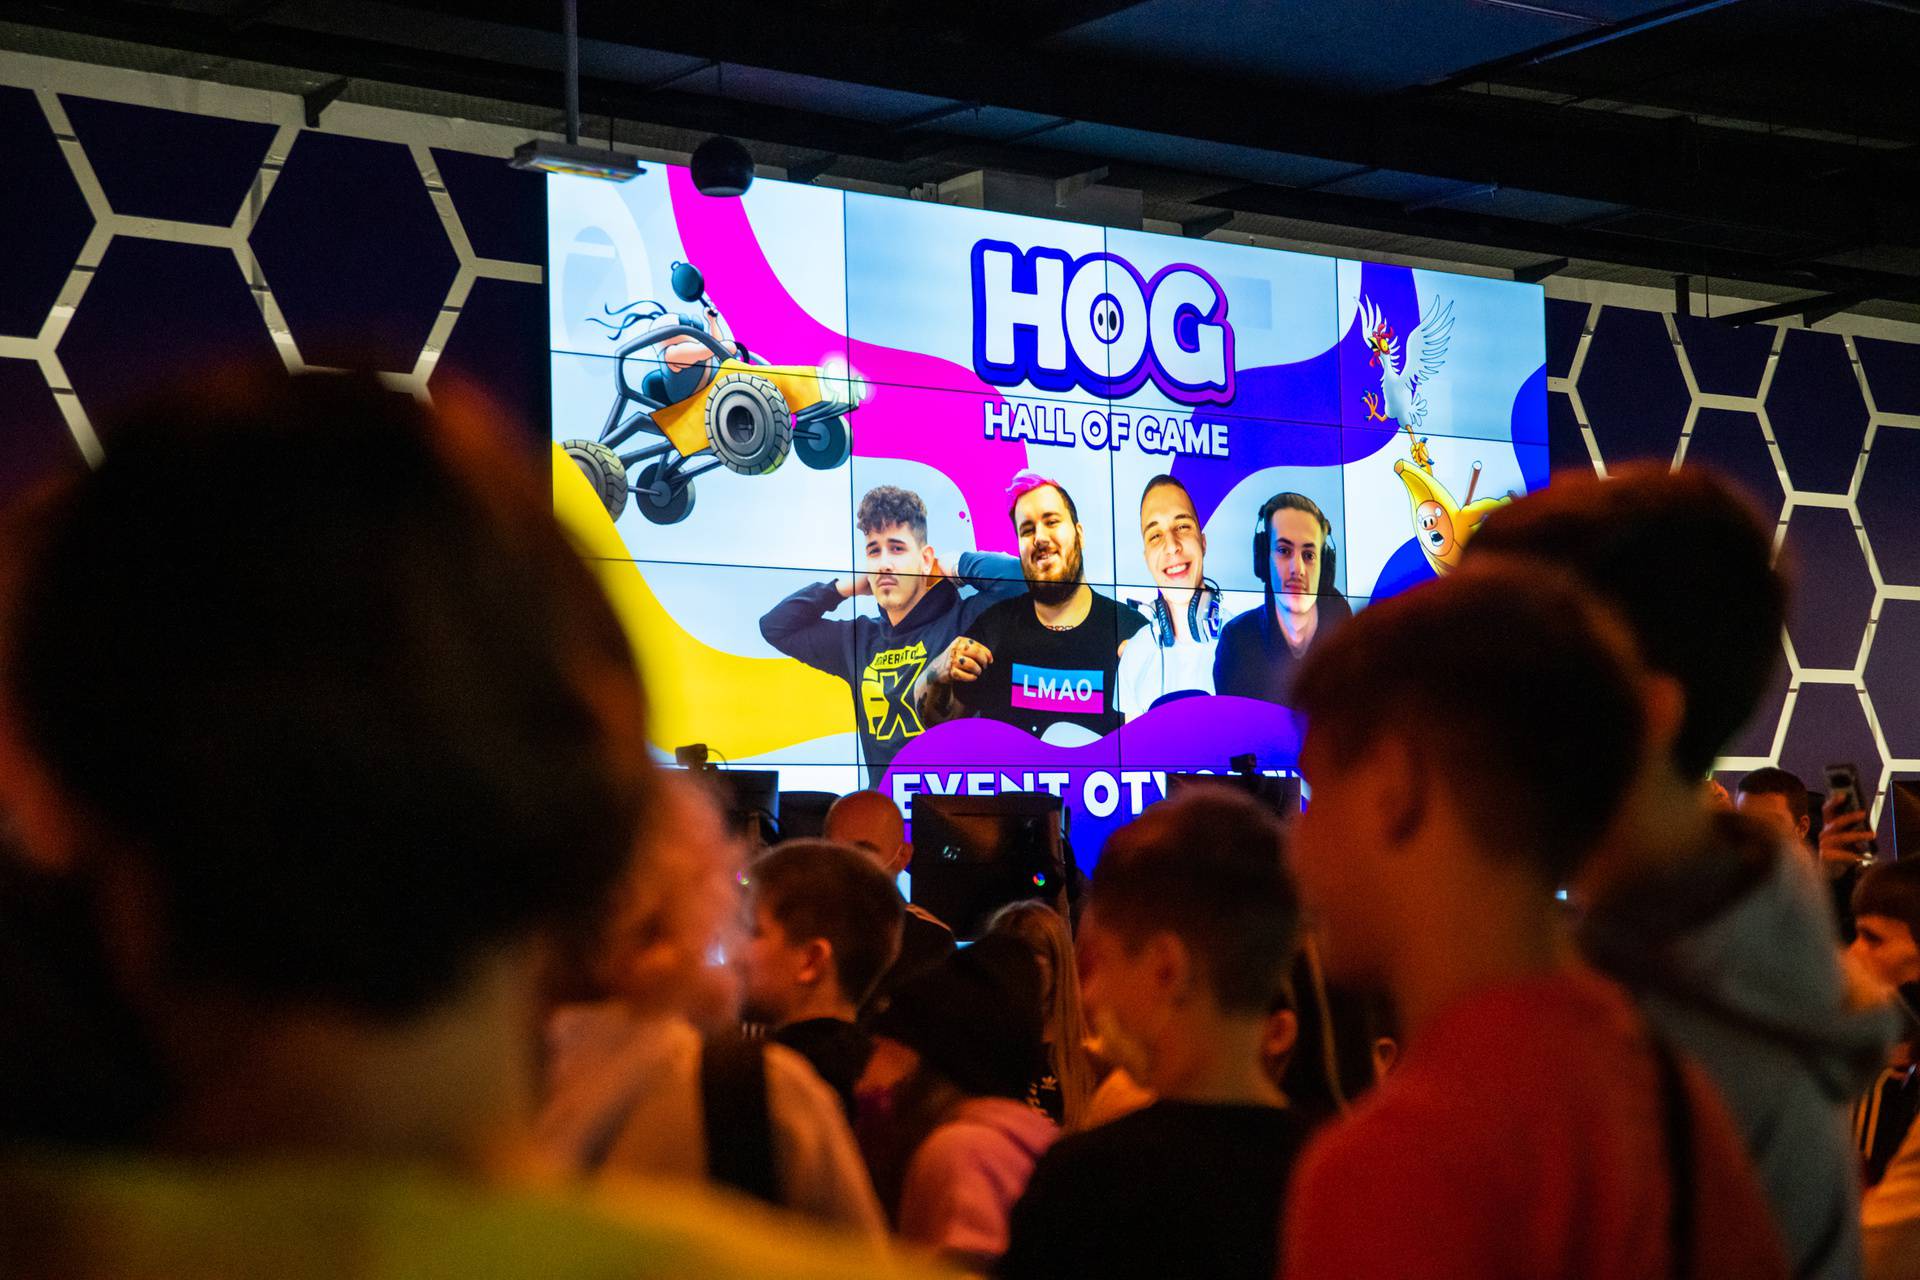 HoG powered by A1 najveća gaming dvorana otvorena uz najveće YouTube zvijezde